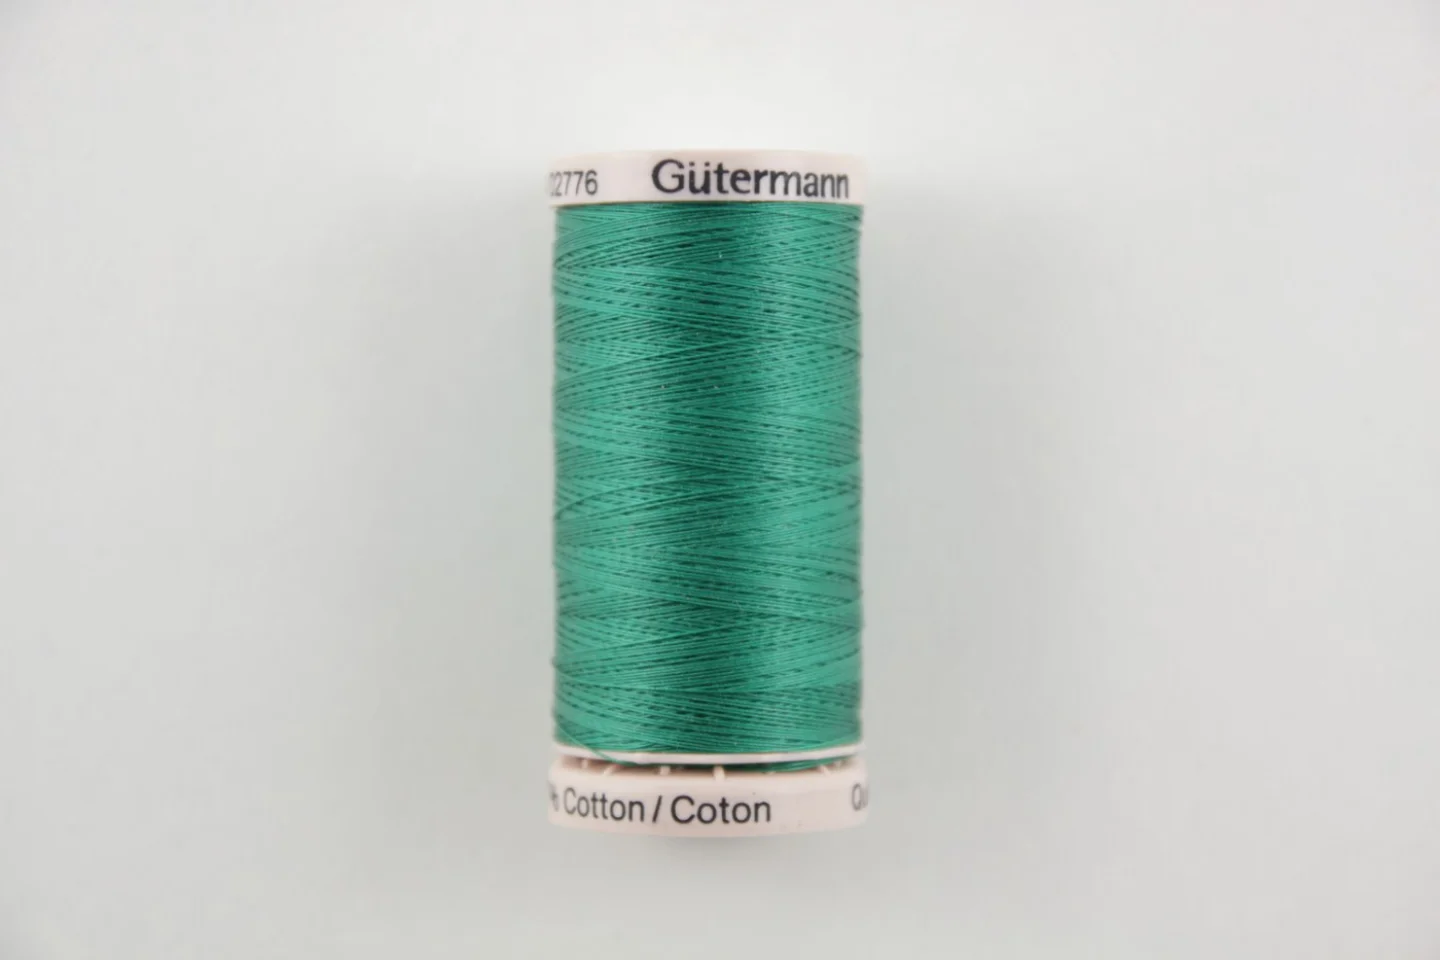 quiltgaren gutermann-groen-8244.